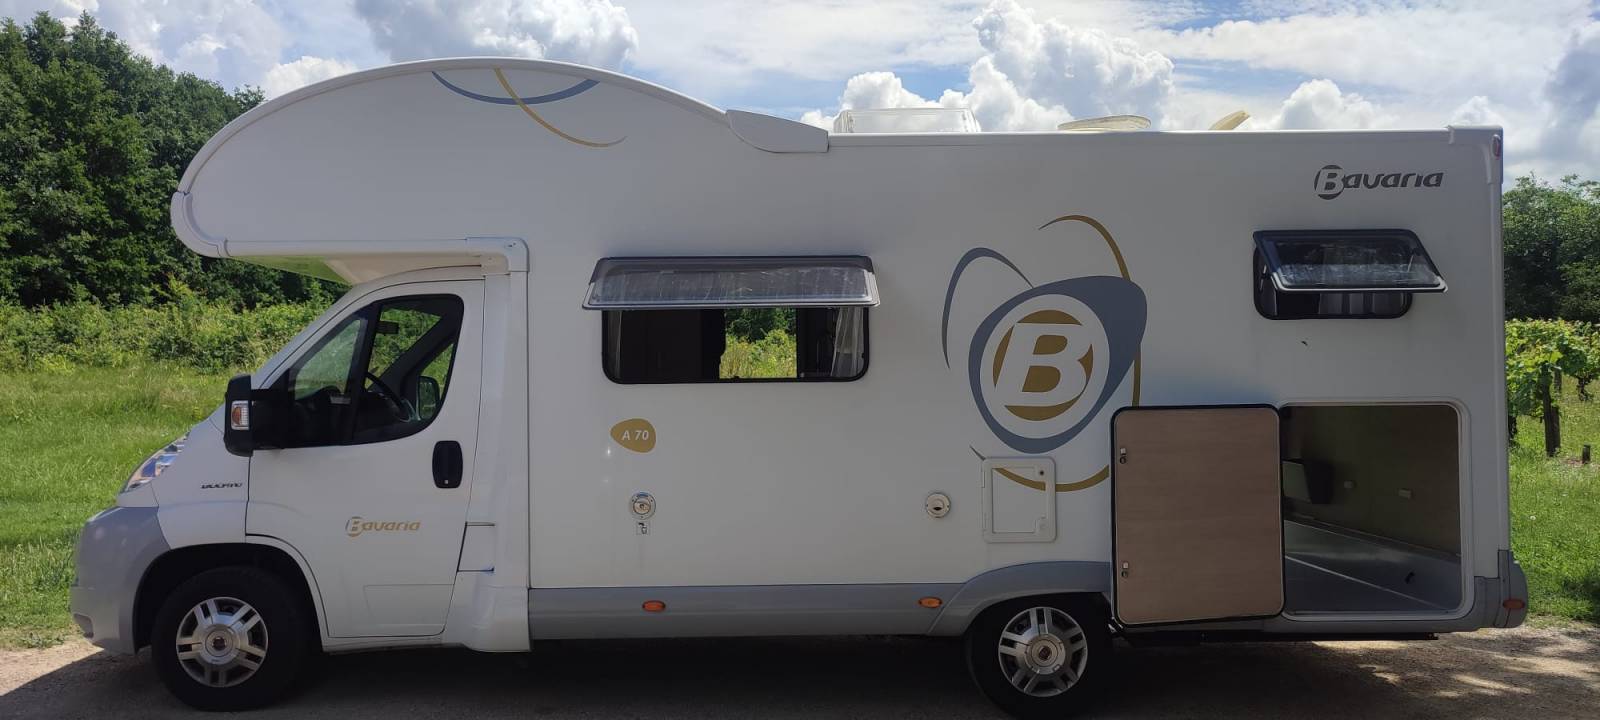 Barillets FAP série 8001 à 8050 pour caravane et camping-car